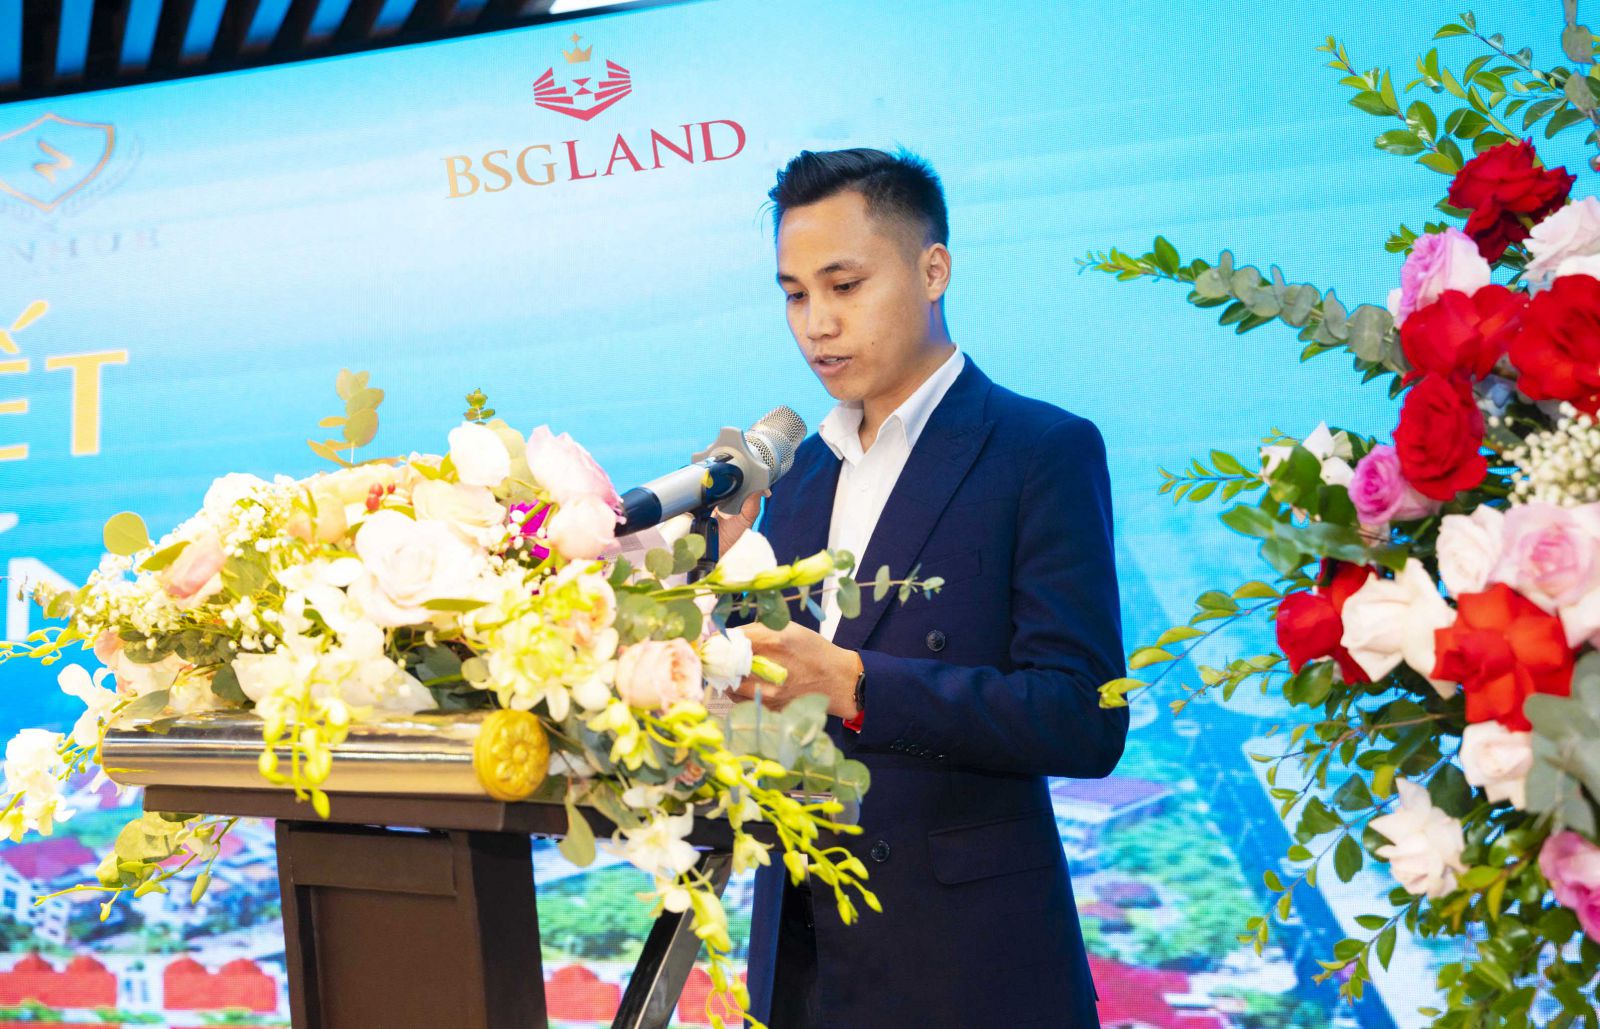 Ông Hồ Trọng Phòng - Chủ tịch BSG Land phát biểu tại buổi lễ